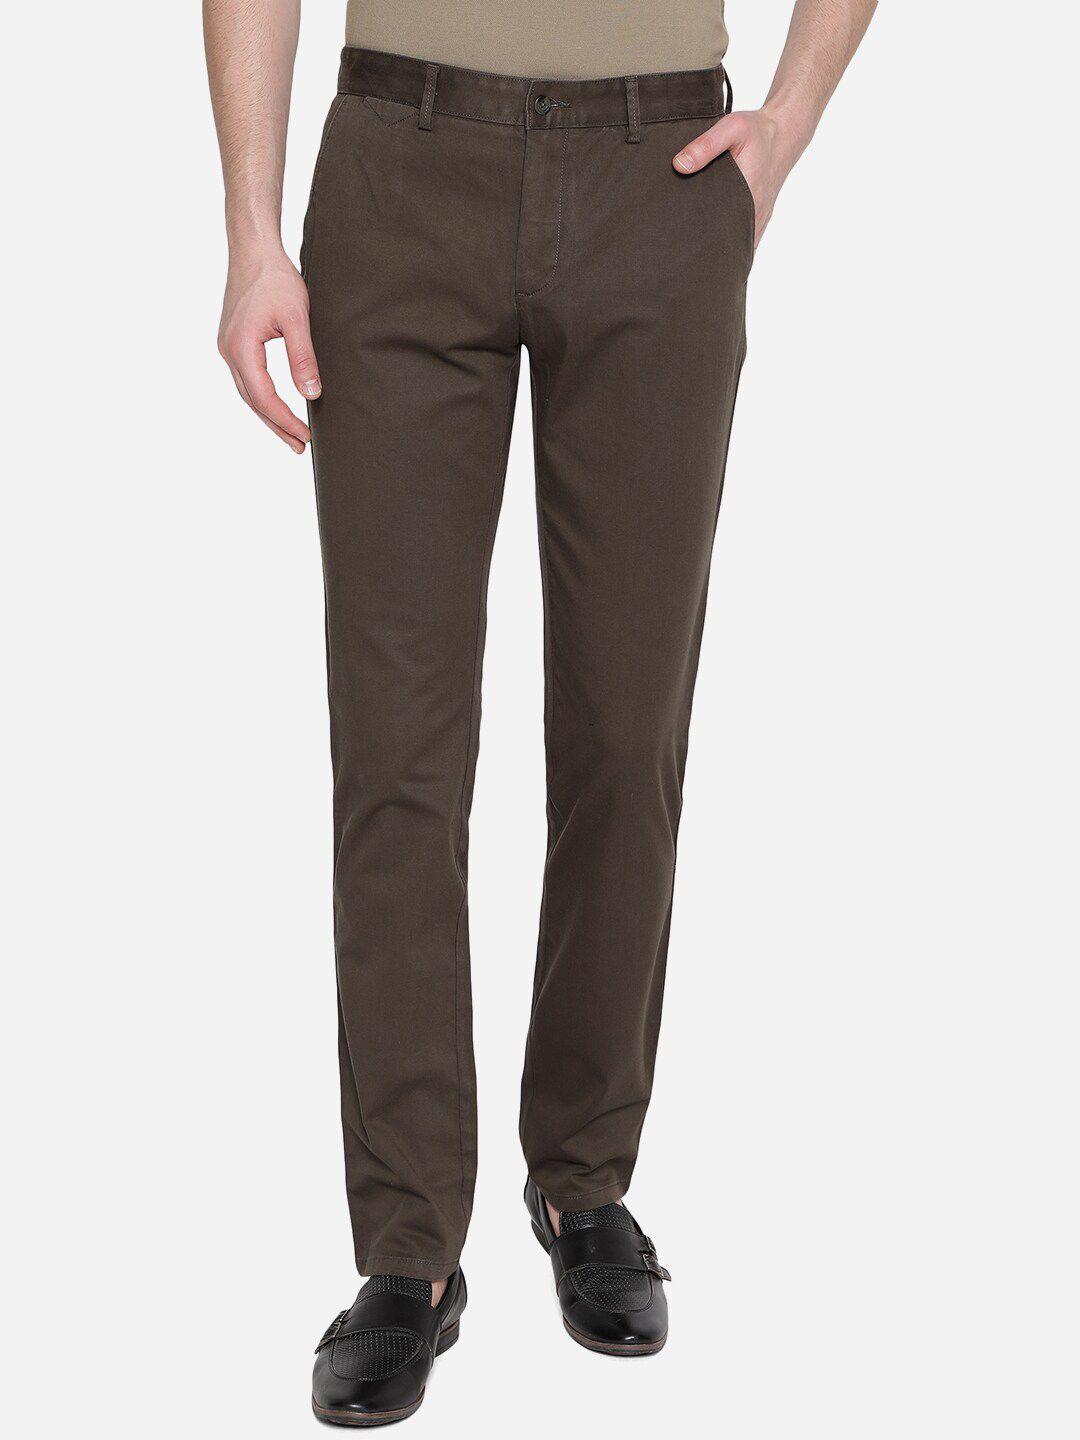 greenfibre-men-brown-skinny-fit-trousers